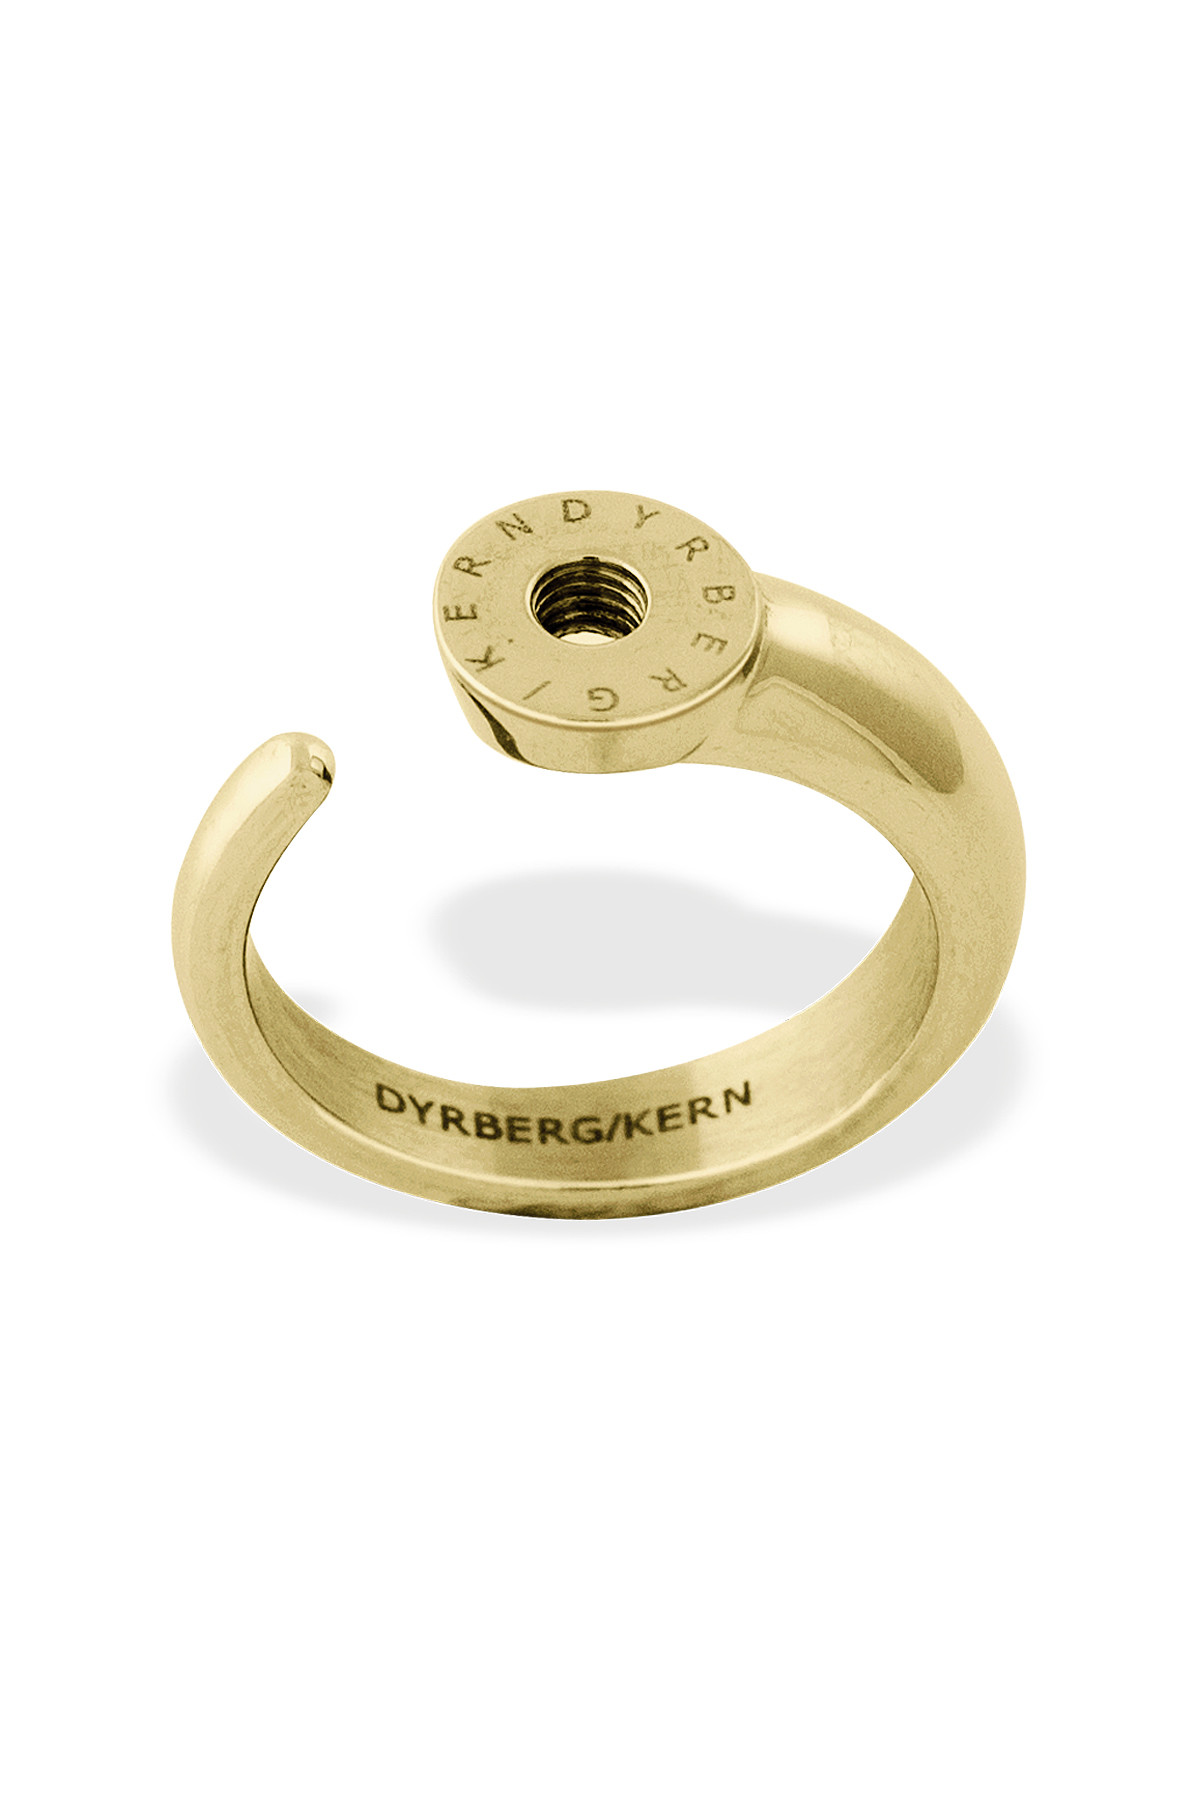 Billede af Dyrberg/kern Ring Ring, Farve: Guld, Størrelse: I/51, Dame